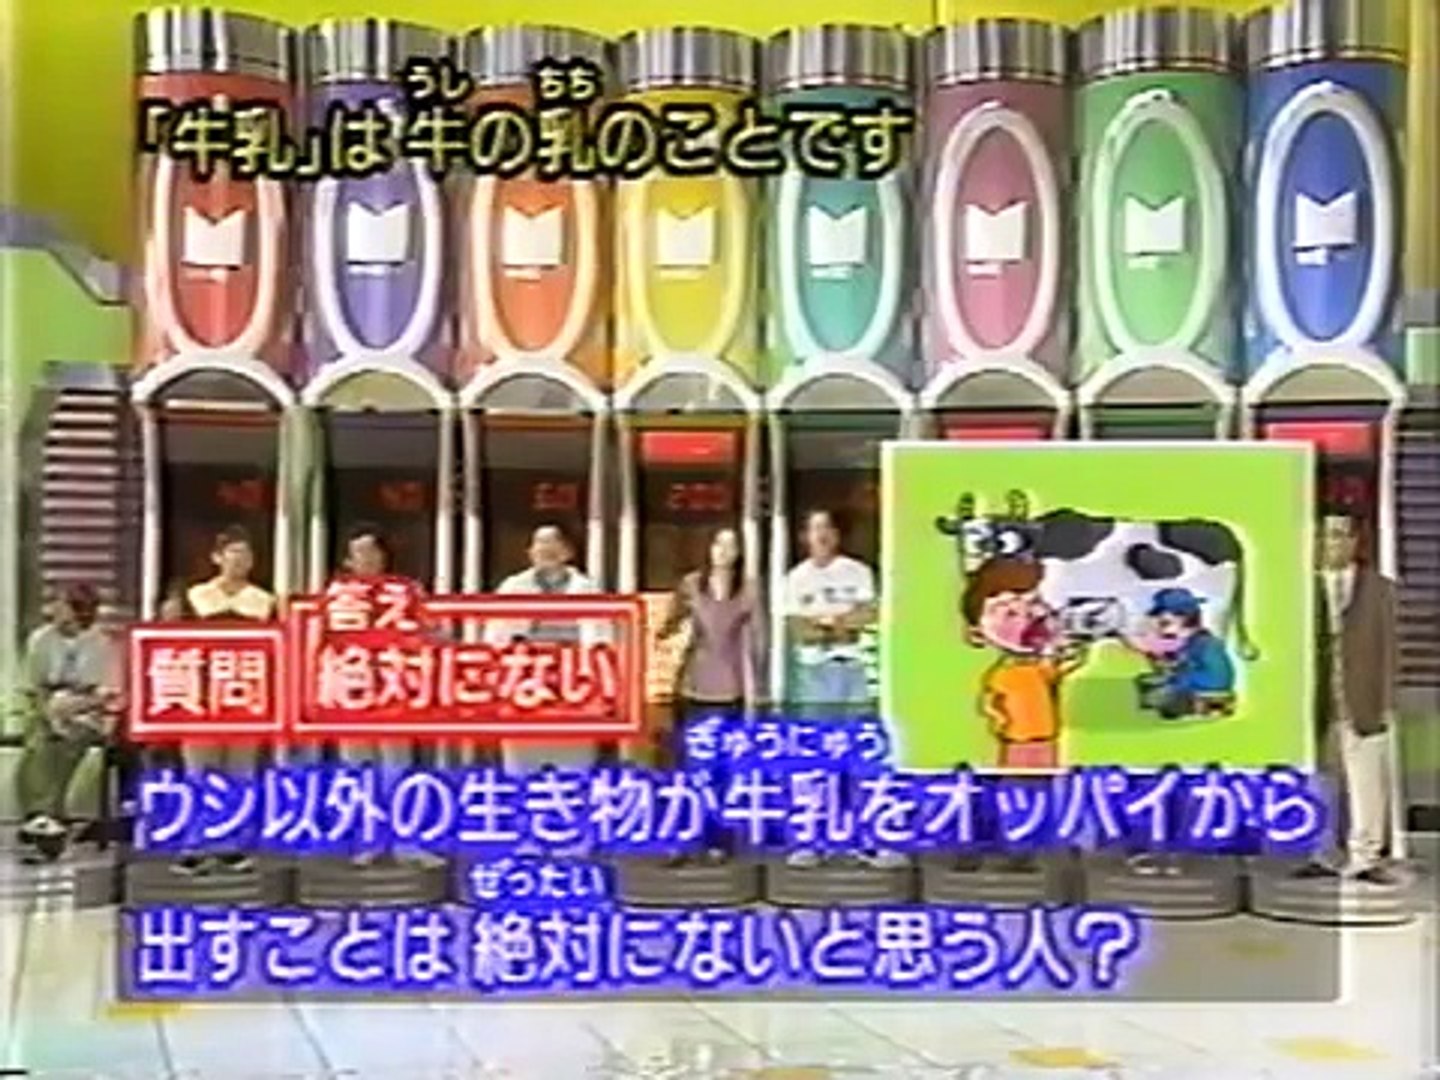 マジカル頭脳パワー 1996年9月12日放送 Video Dailymotion